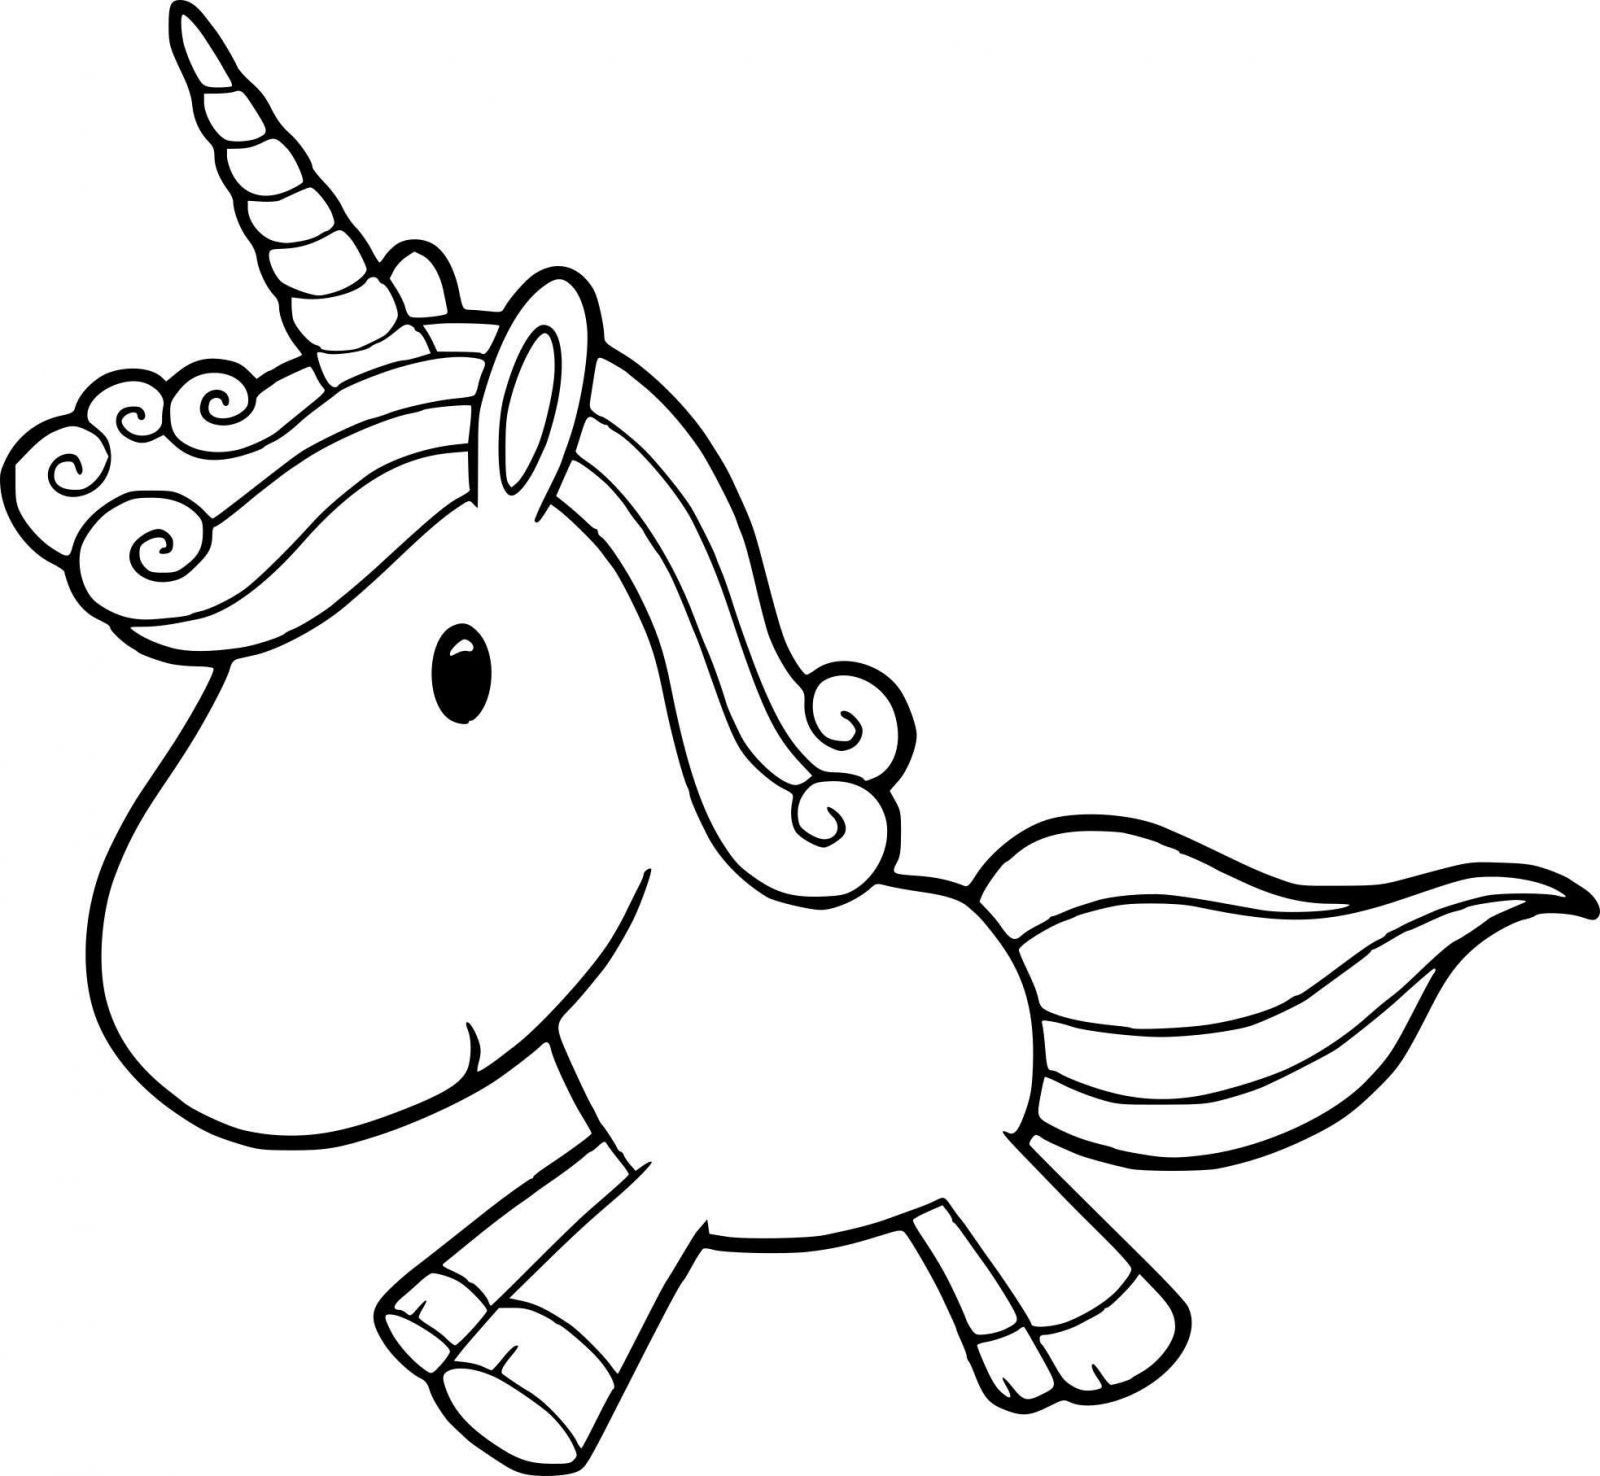 Coloriage Licorne Kawaii Facile | Unicorn Coloring Pages dedans Coloriage Unicorn A Imprimer